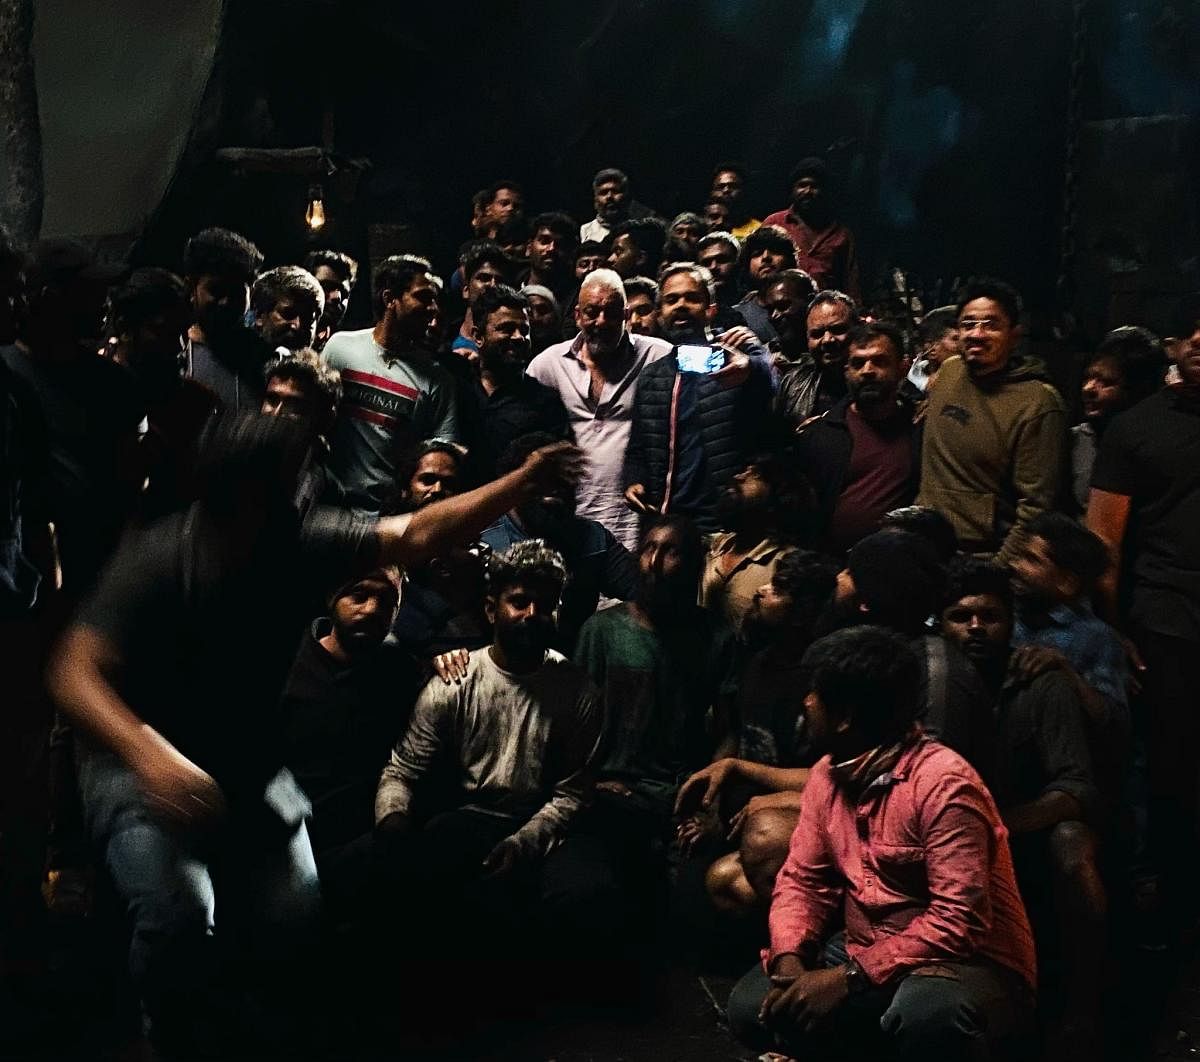 ಹೈದರಾಬಾದ್‌ನಲ್ಲಿ ಚಿತ್ರೀಕರಣ ಮುಗಿಸಿದ ಬಳಿಕ ಕೆಜಿಎಫ್‌ ಚಾಪ್ಟರ್‌ –2 ಚಿತ್ರ ತಂಡ ಹಂಚಿಕೊಂಡಿರುವ ಗ್ರೂಪ್‌ ಫೋಟೋ (ಟ್ವಿಟರ್‌ ಚಿತ್ರ)